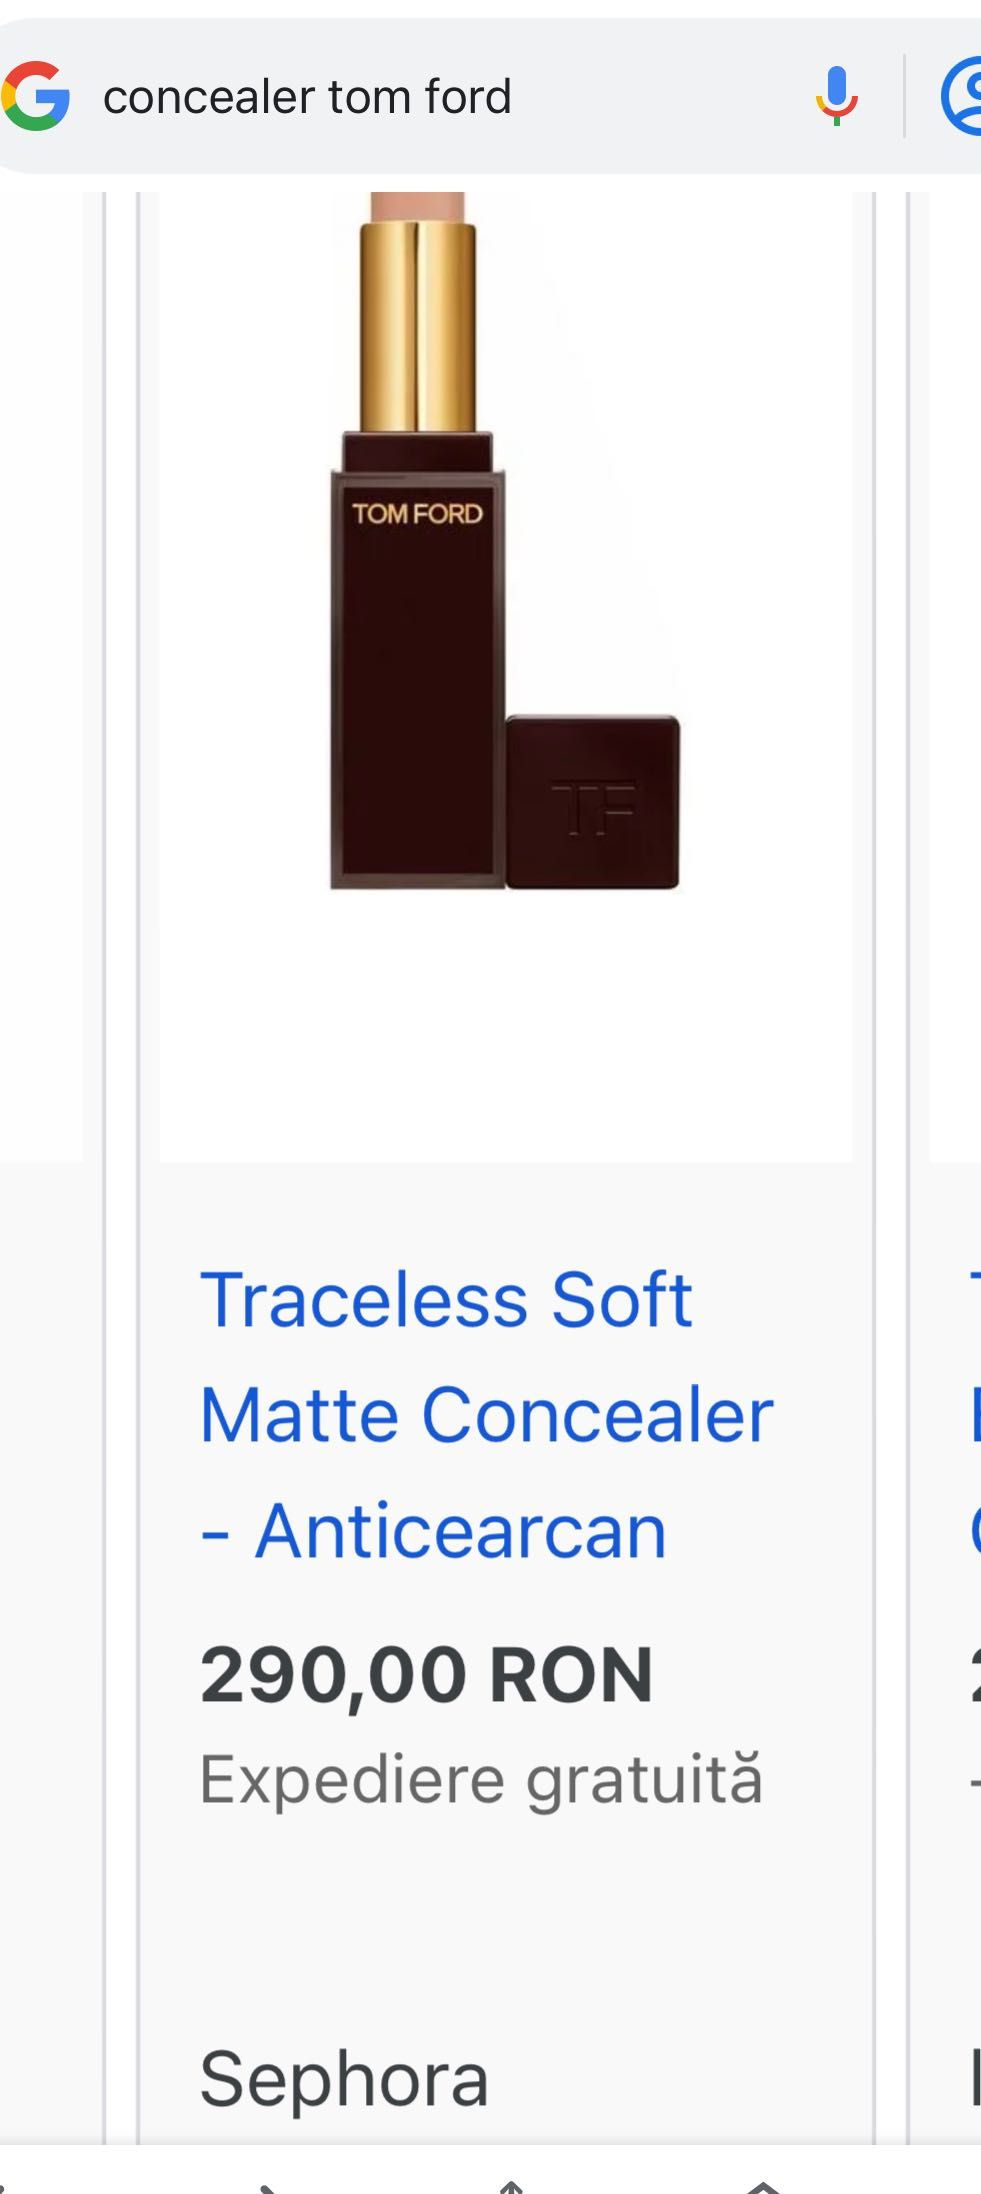 TOM FORD Traceless Soft Matte Concealer - Anticearcan